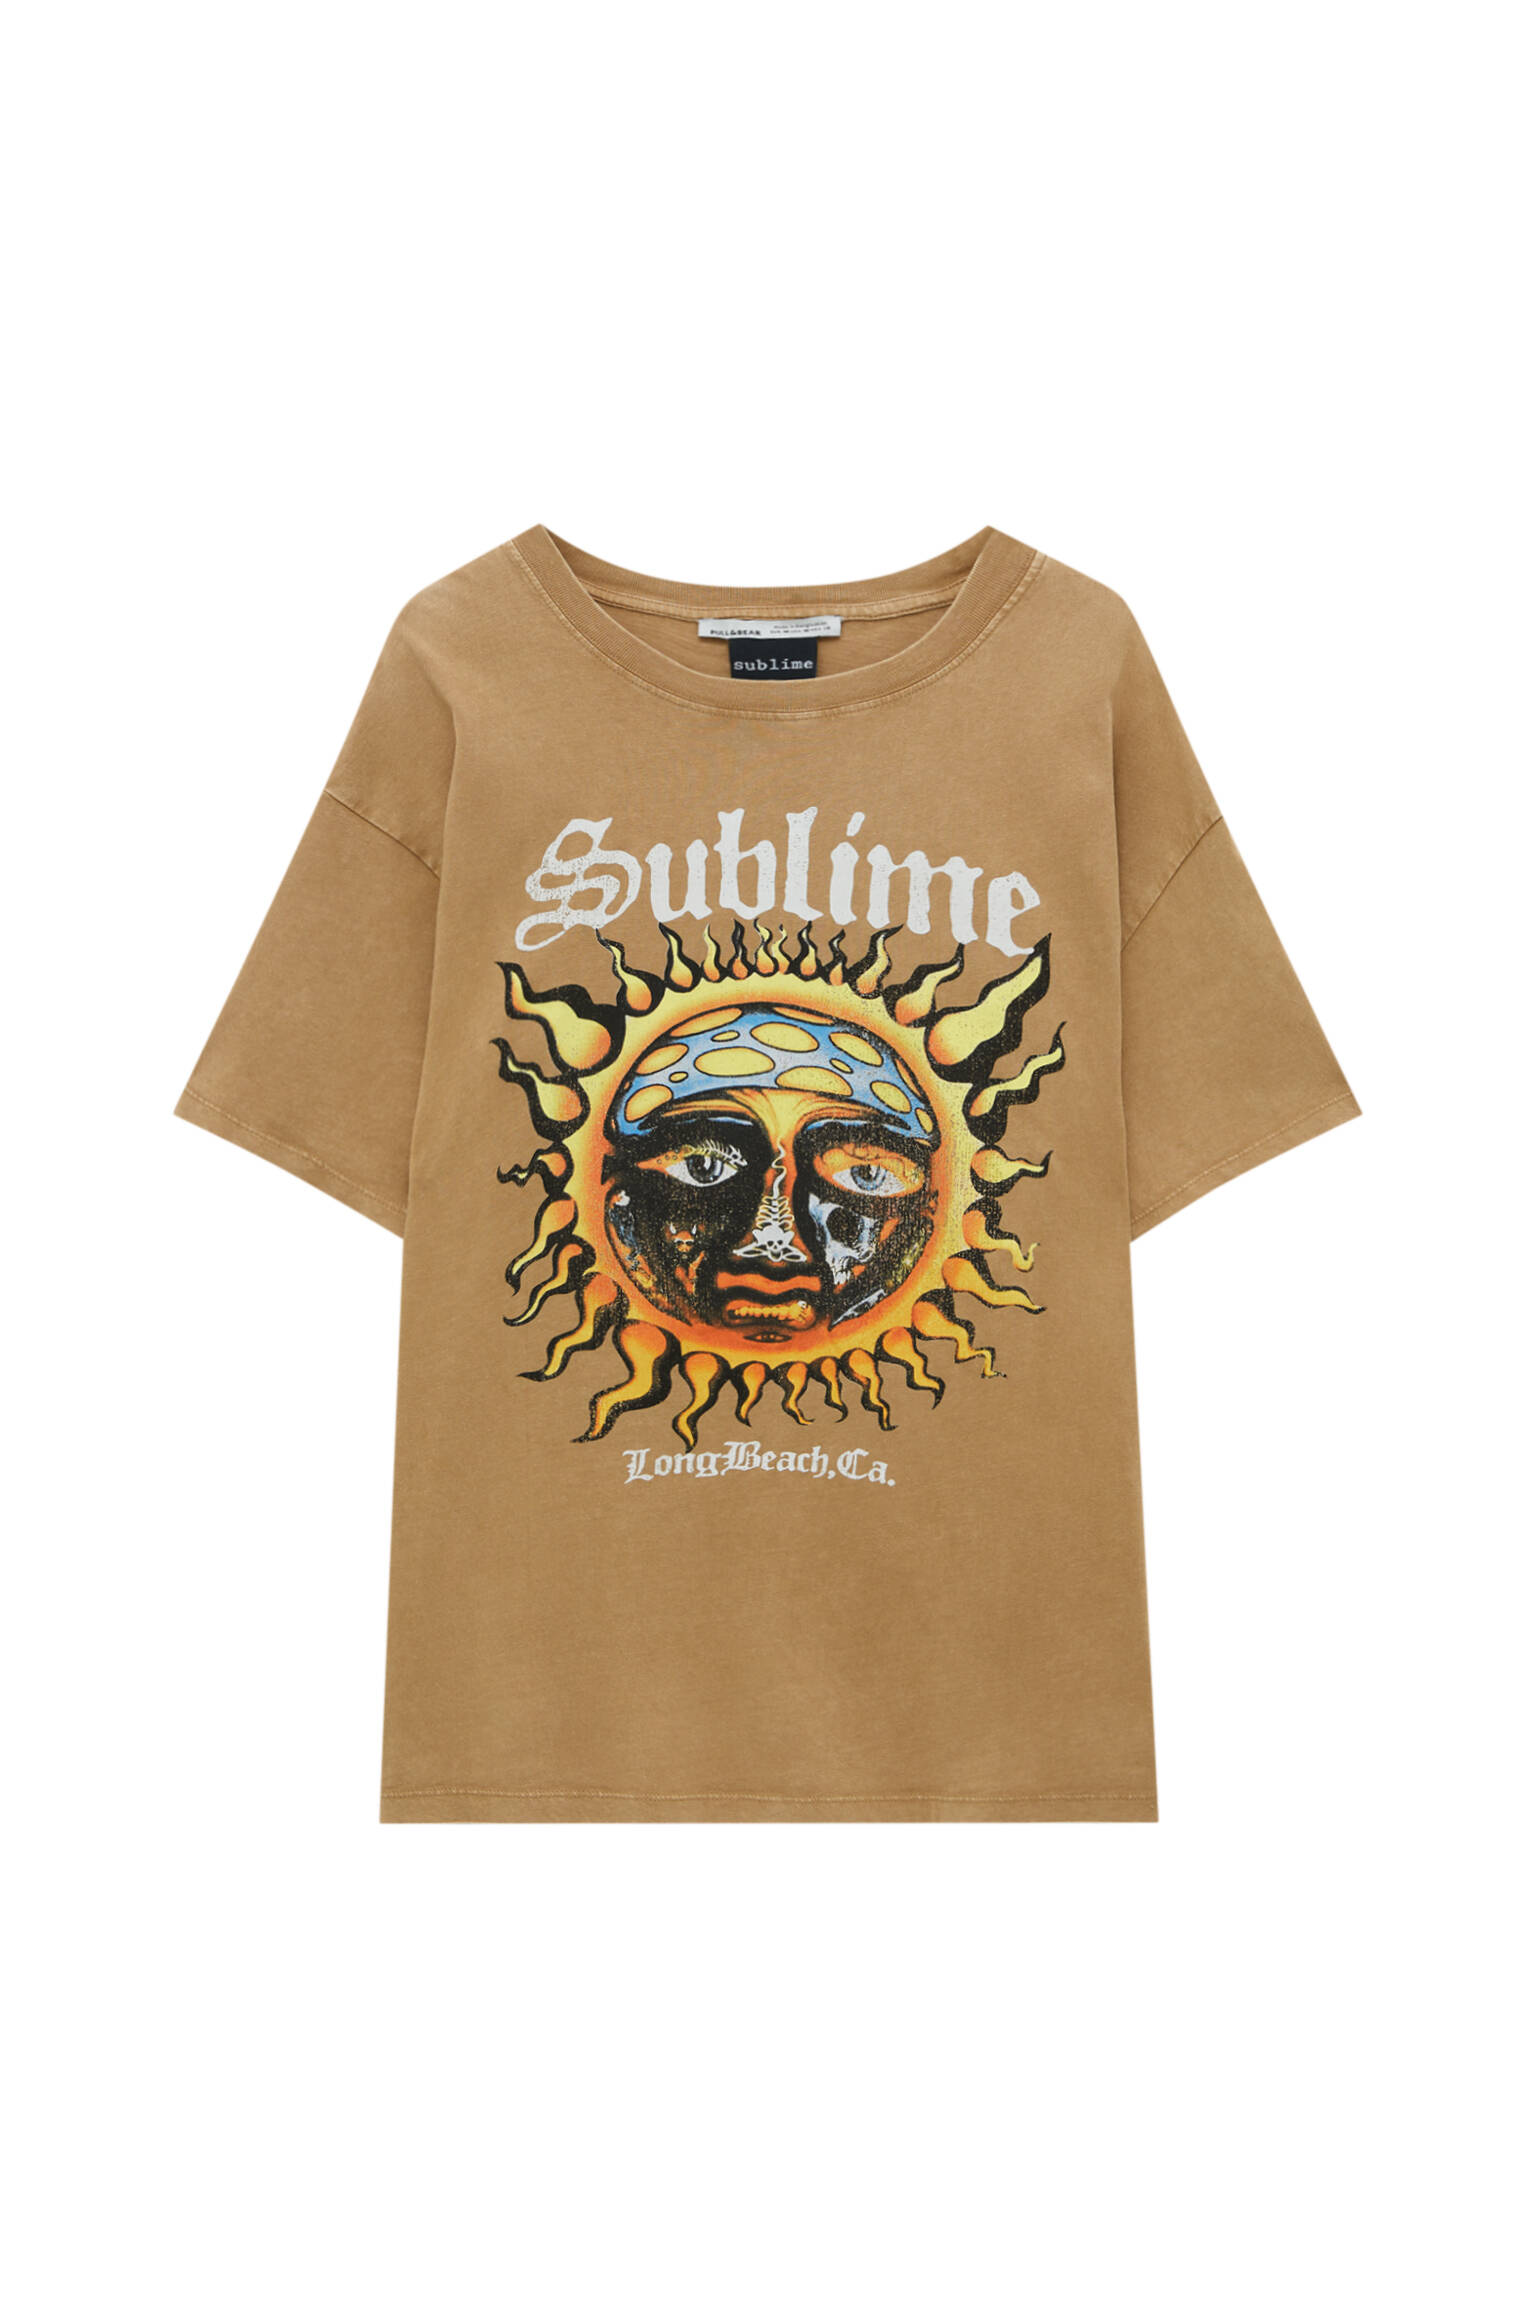 Pull&bear Femme T-shirt Sublime à Manches Courtes, Col Rond Et Imprimé Soleil Contrastant Avec Inscription Long Beach Ca. Camel Sombre Xl